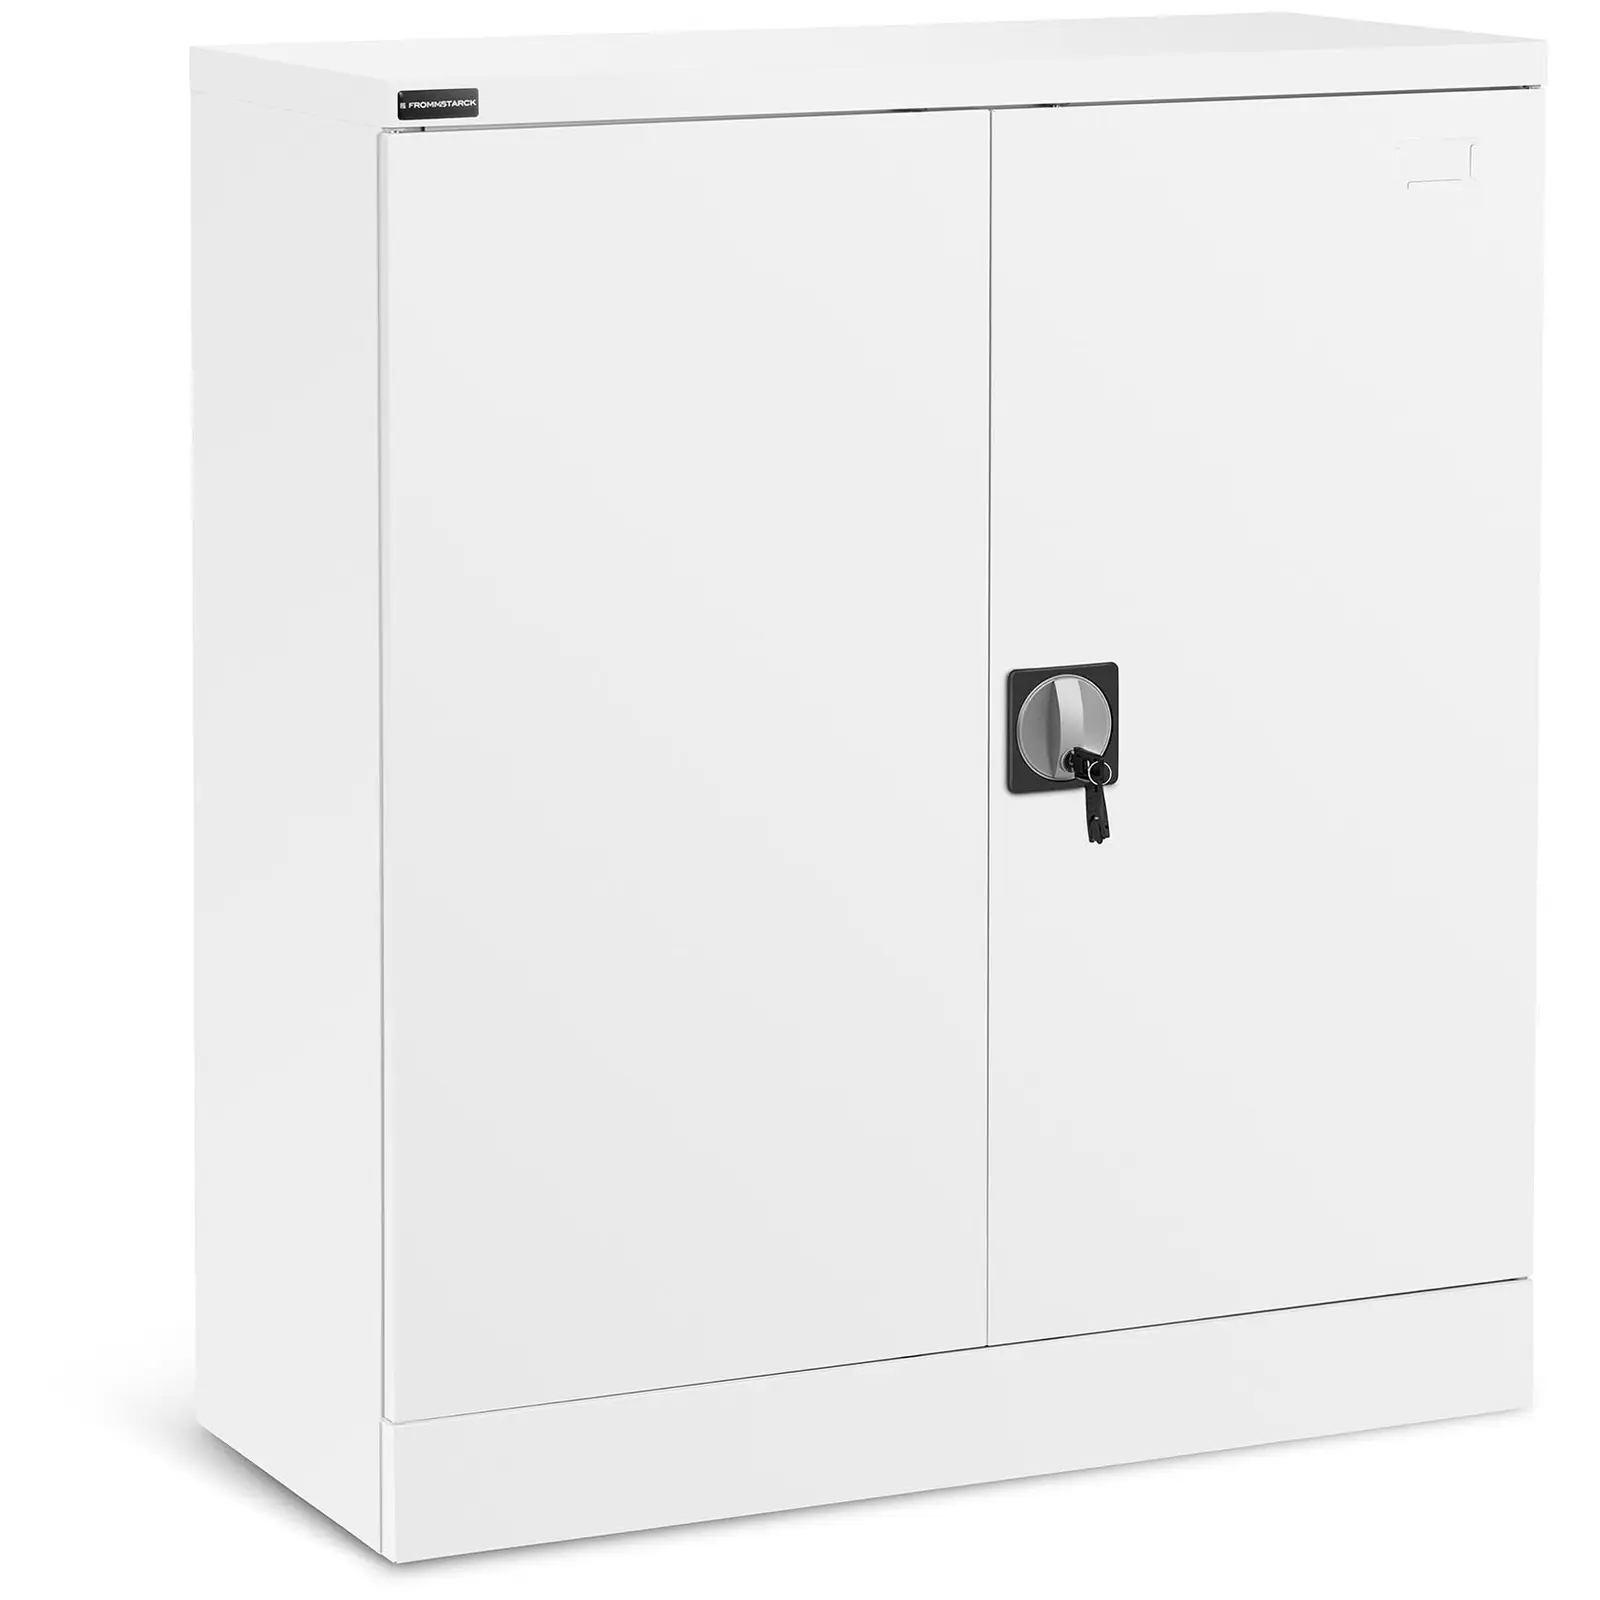 Metal Cabinet - 102 cm - 2 shelves - white